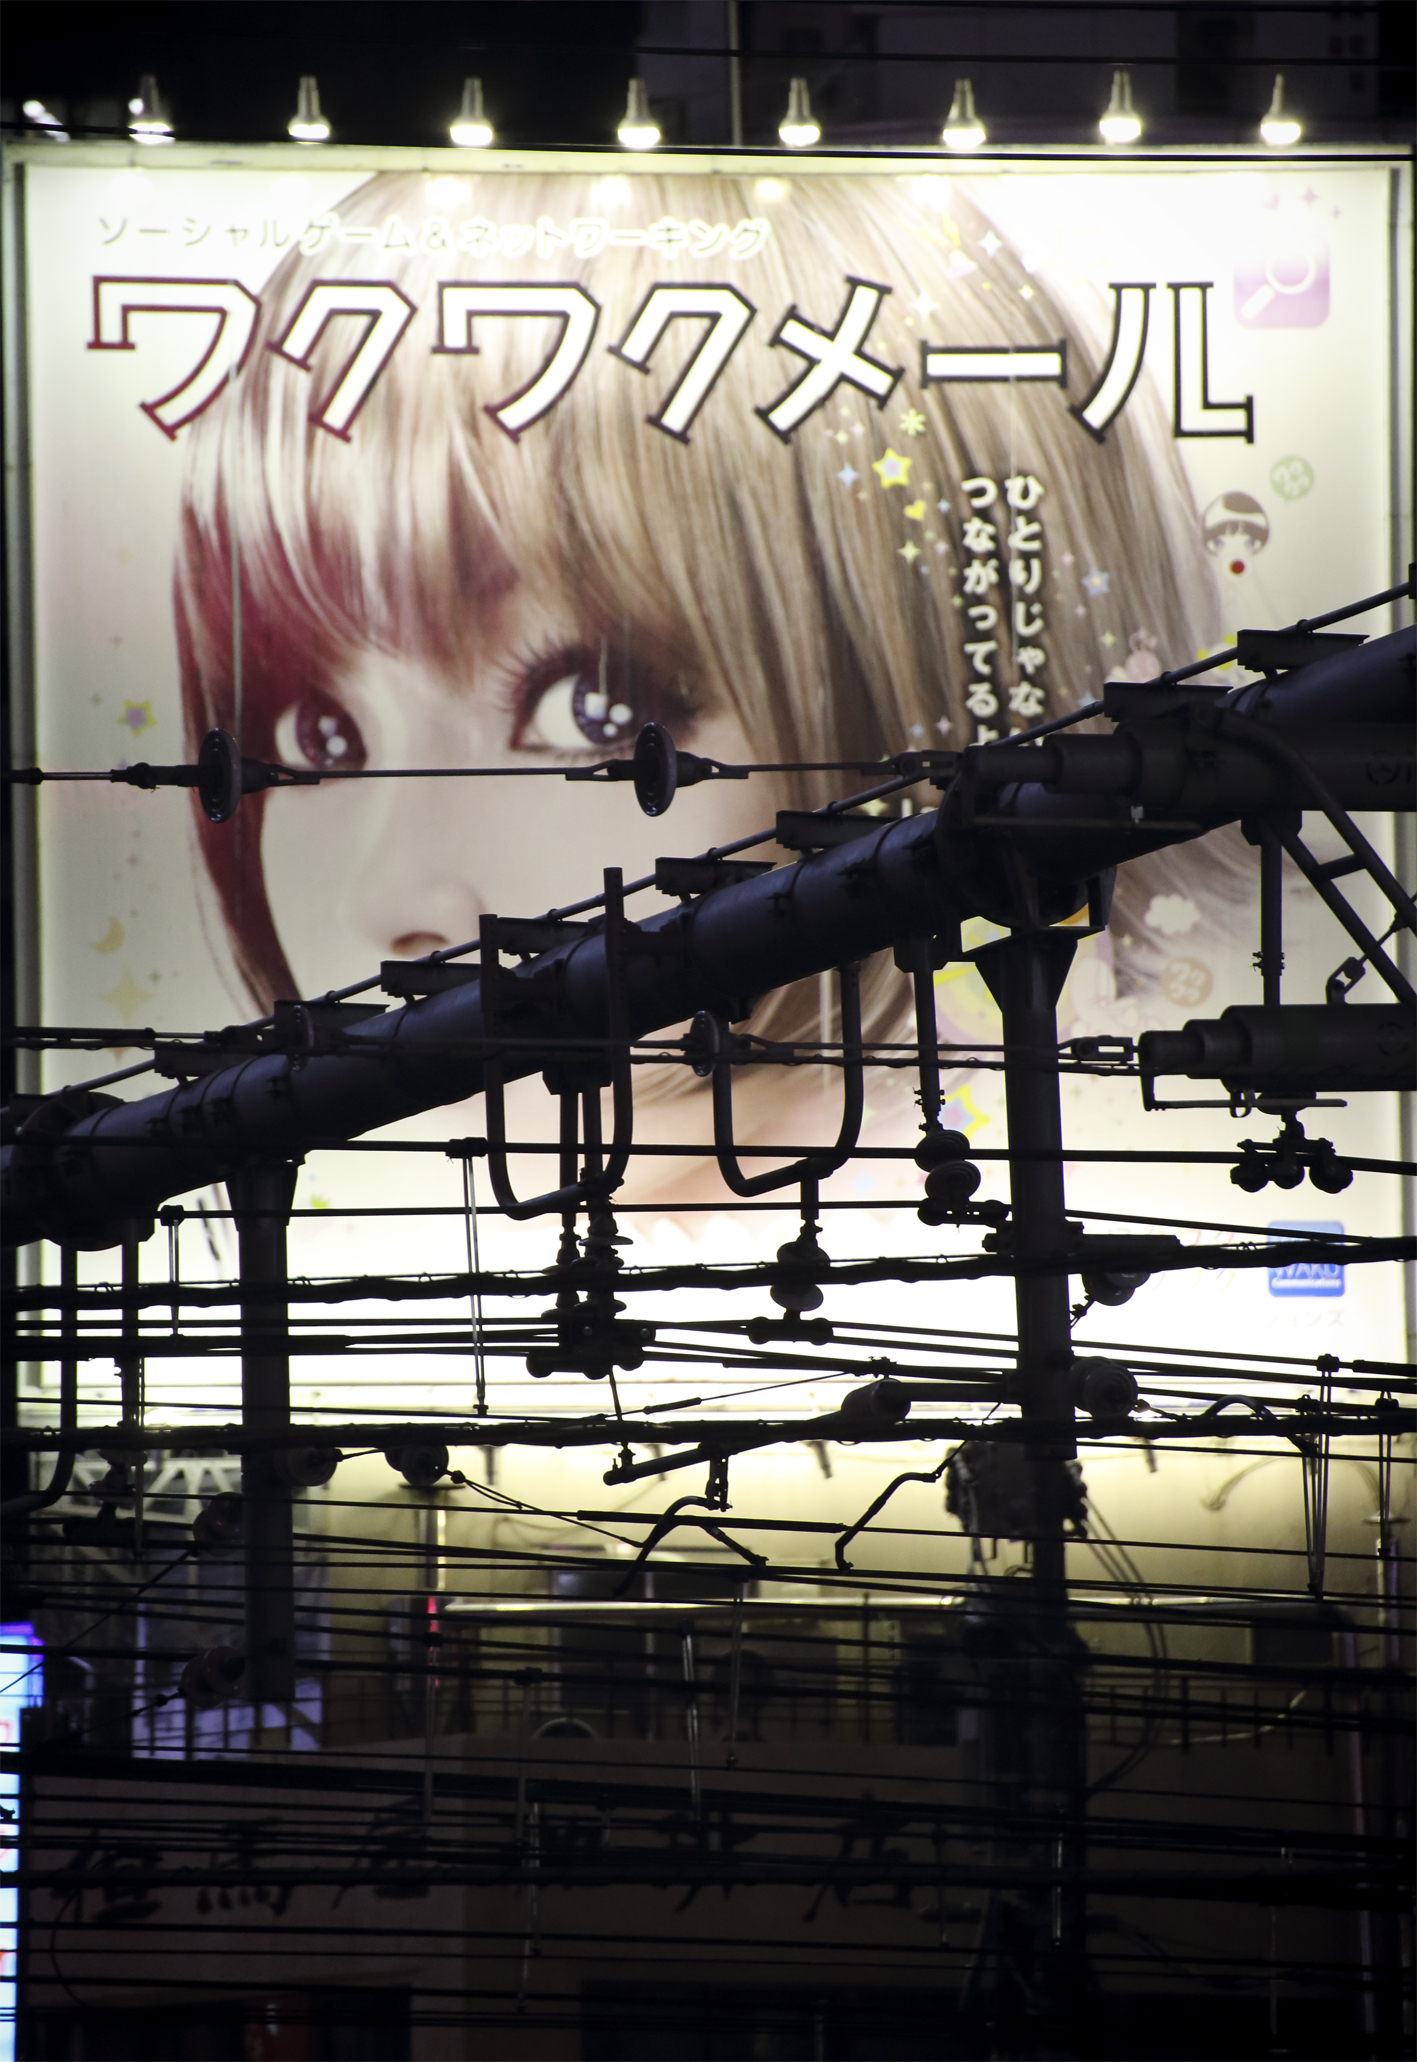 Shinjuku Girl night 1.jpg